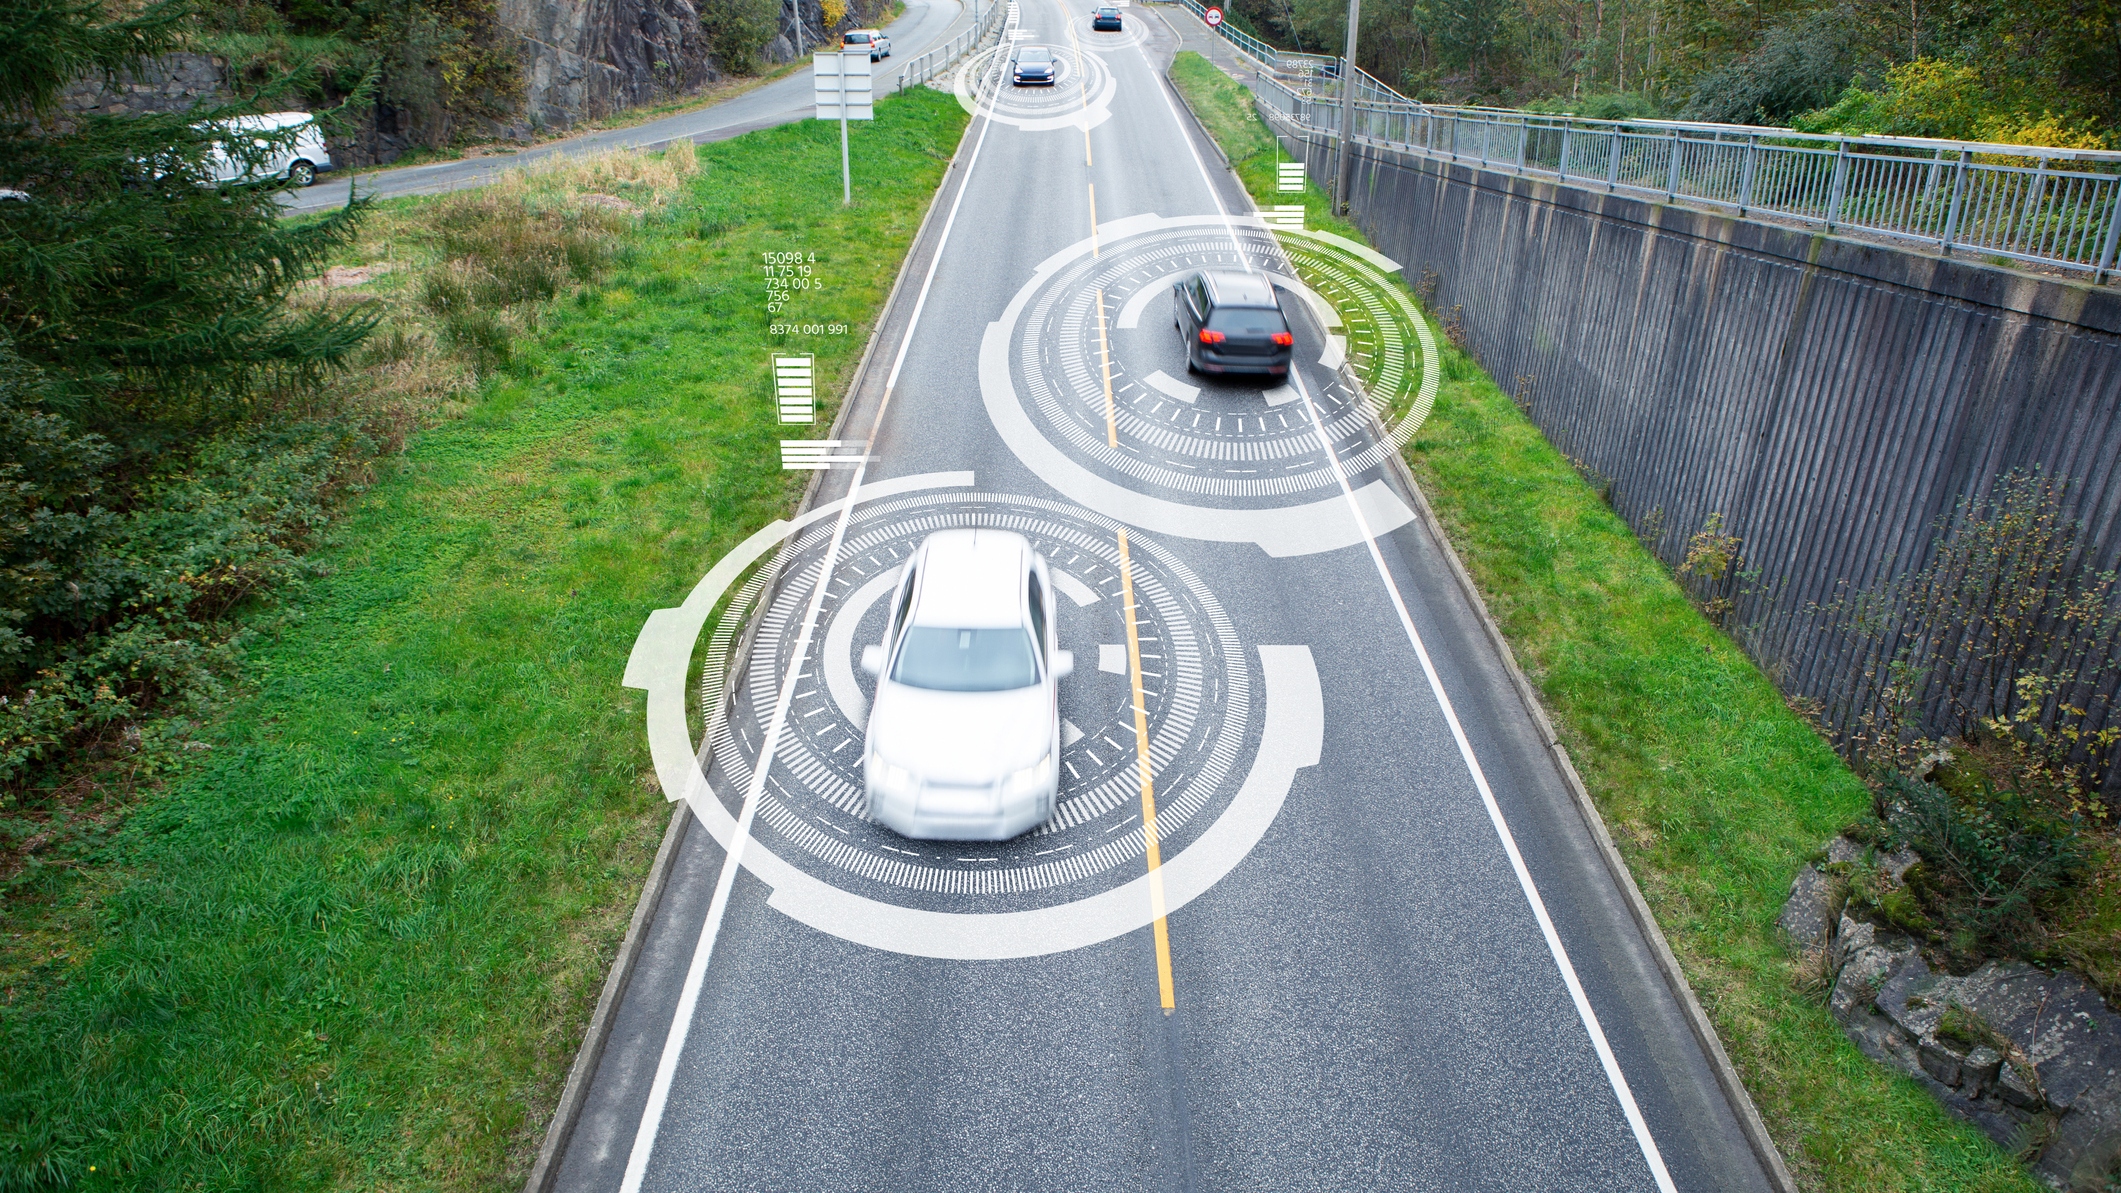 Liability for autonomous vehicles